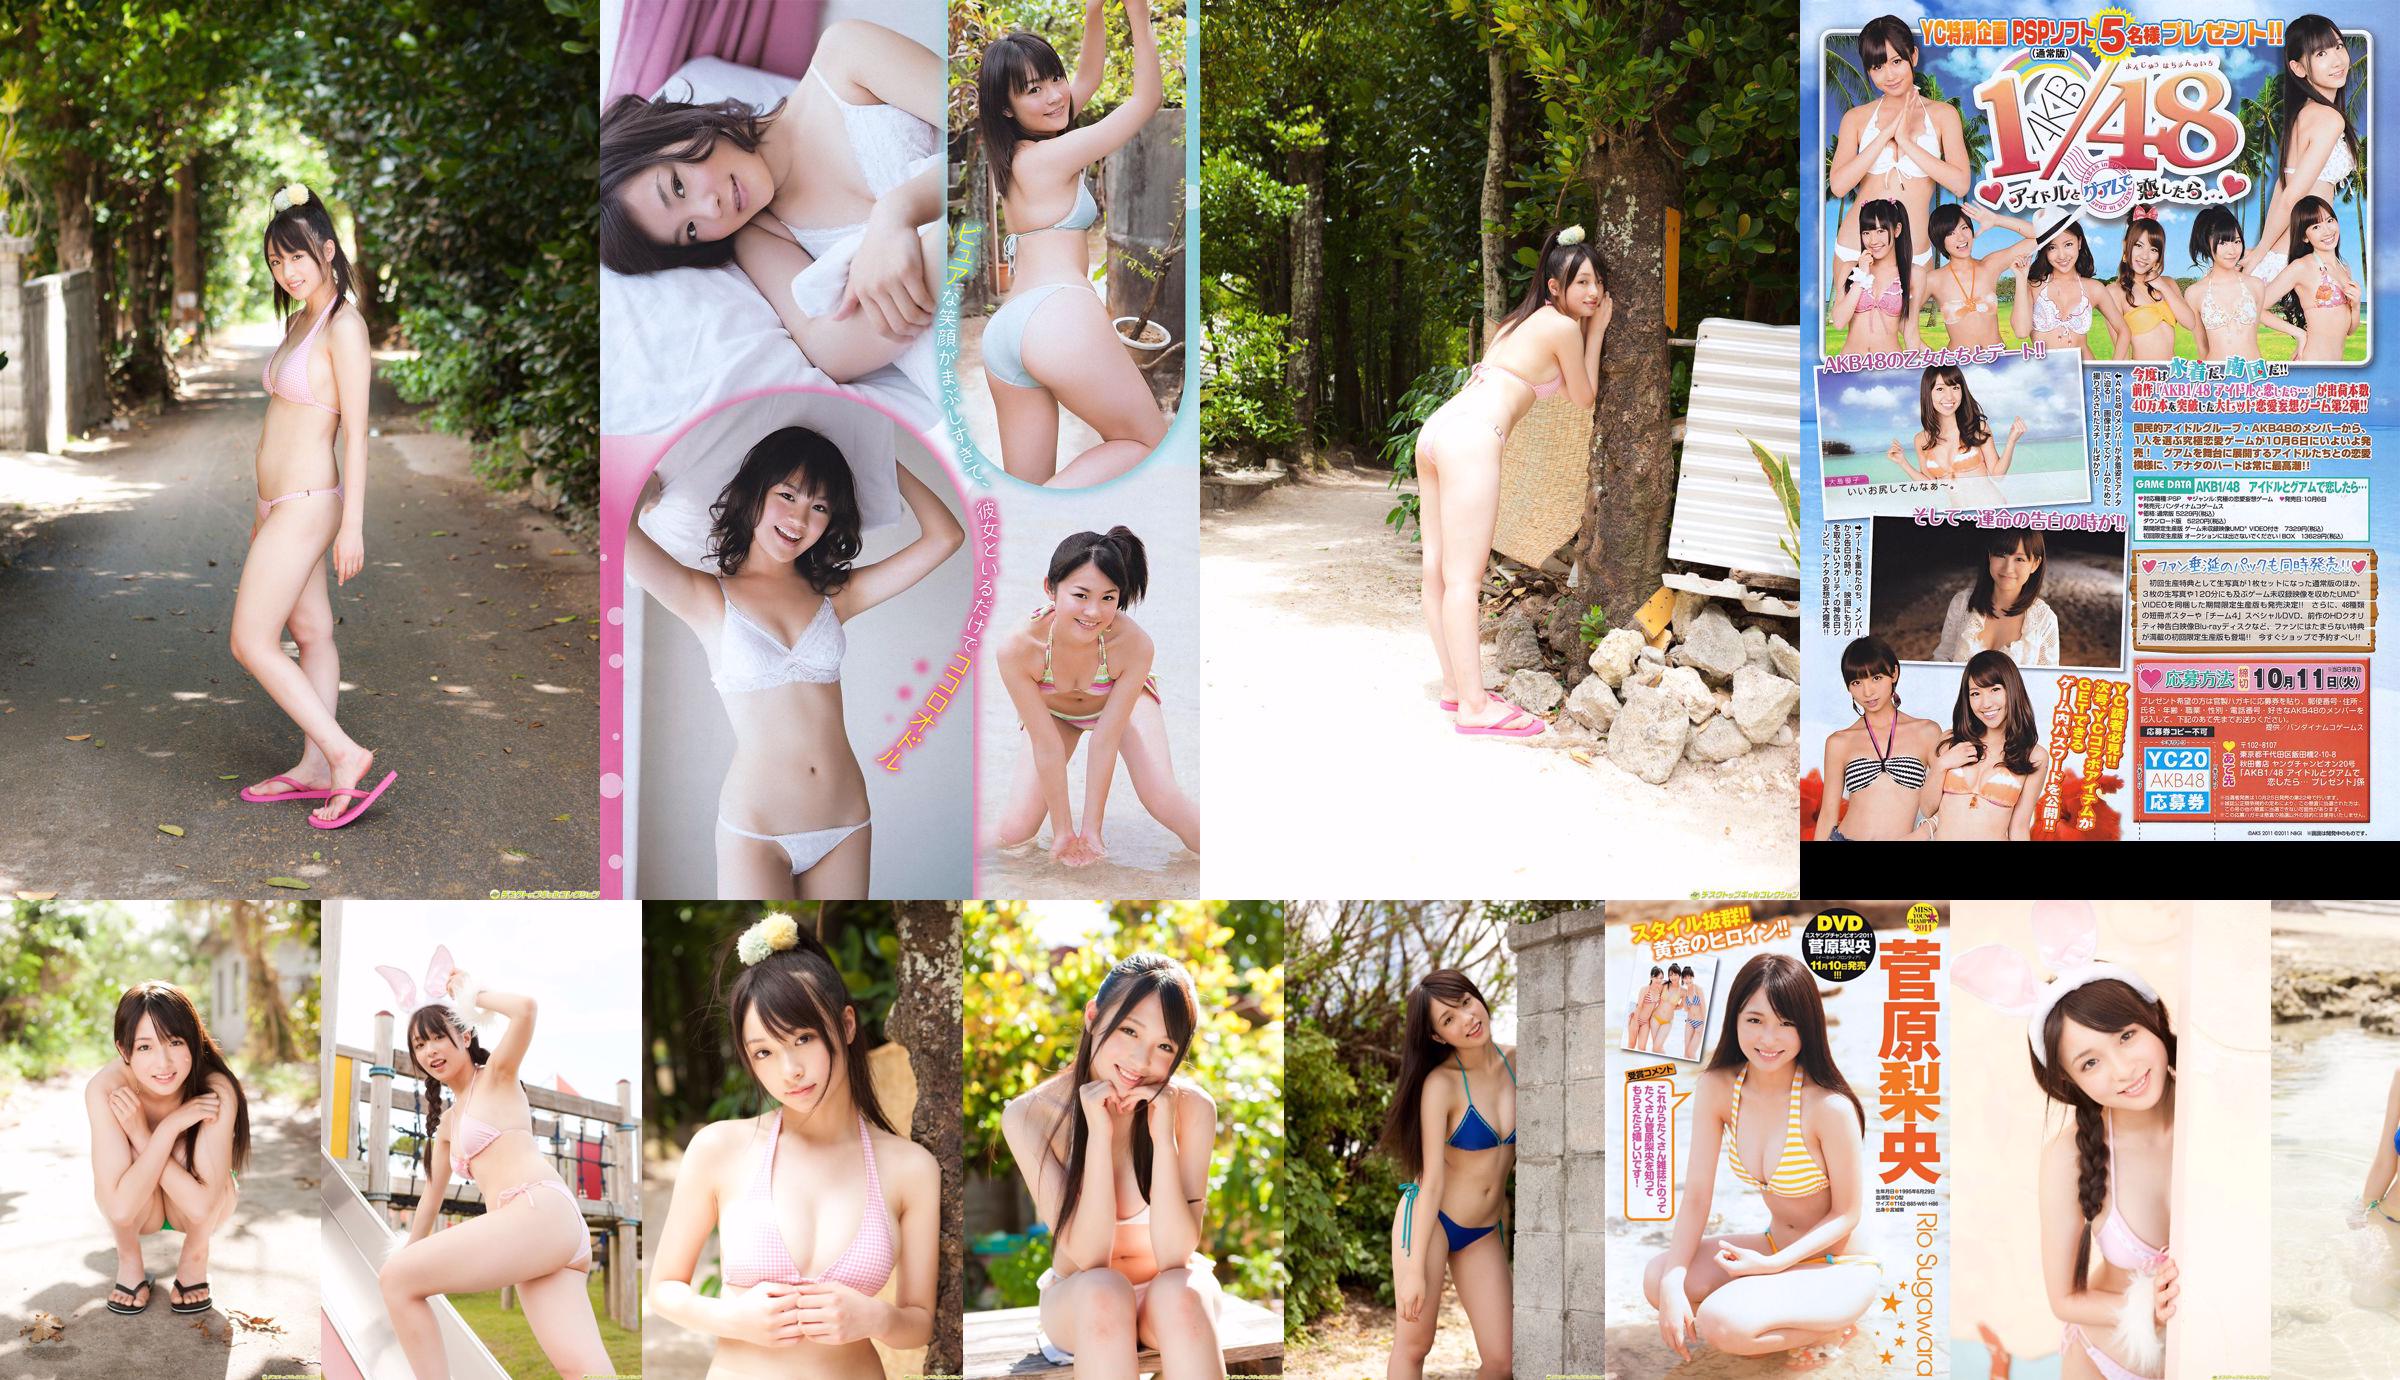 [Juara Muda] Sugawara Risa, Horikawa Mikako, Matsushima no atau Majalah Foto No. 20 2011 No.0976bc Halaman 1